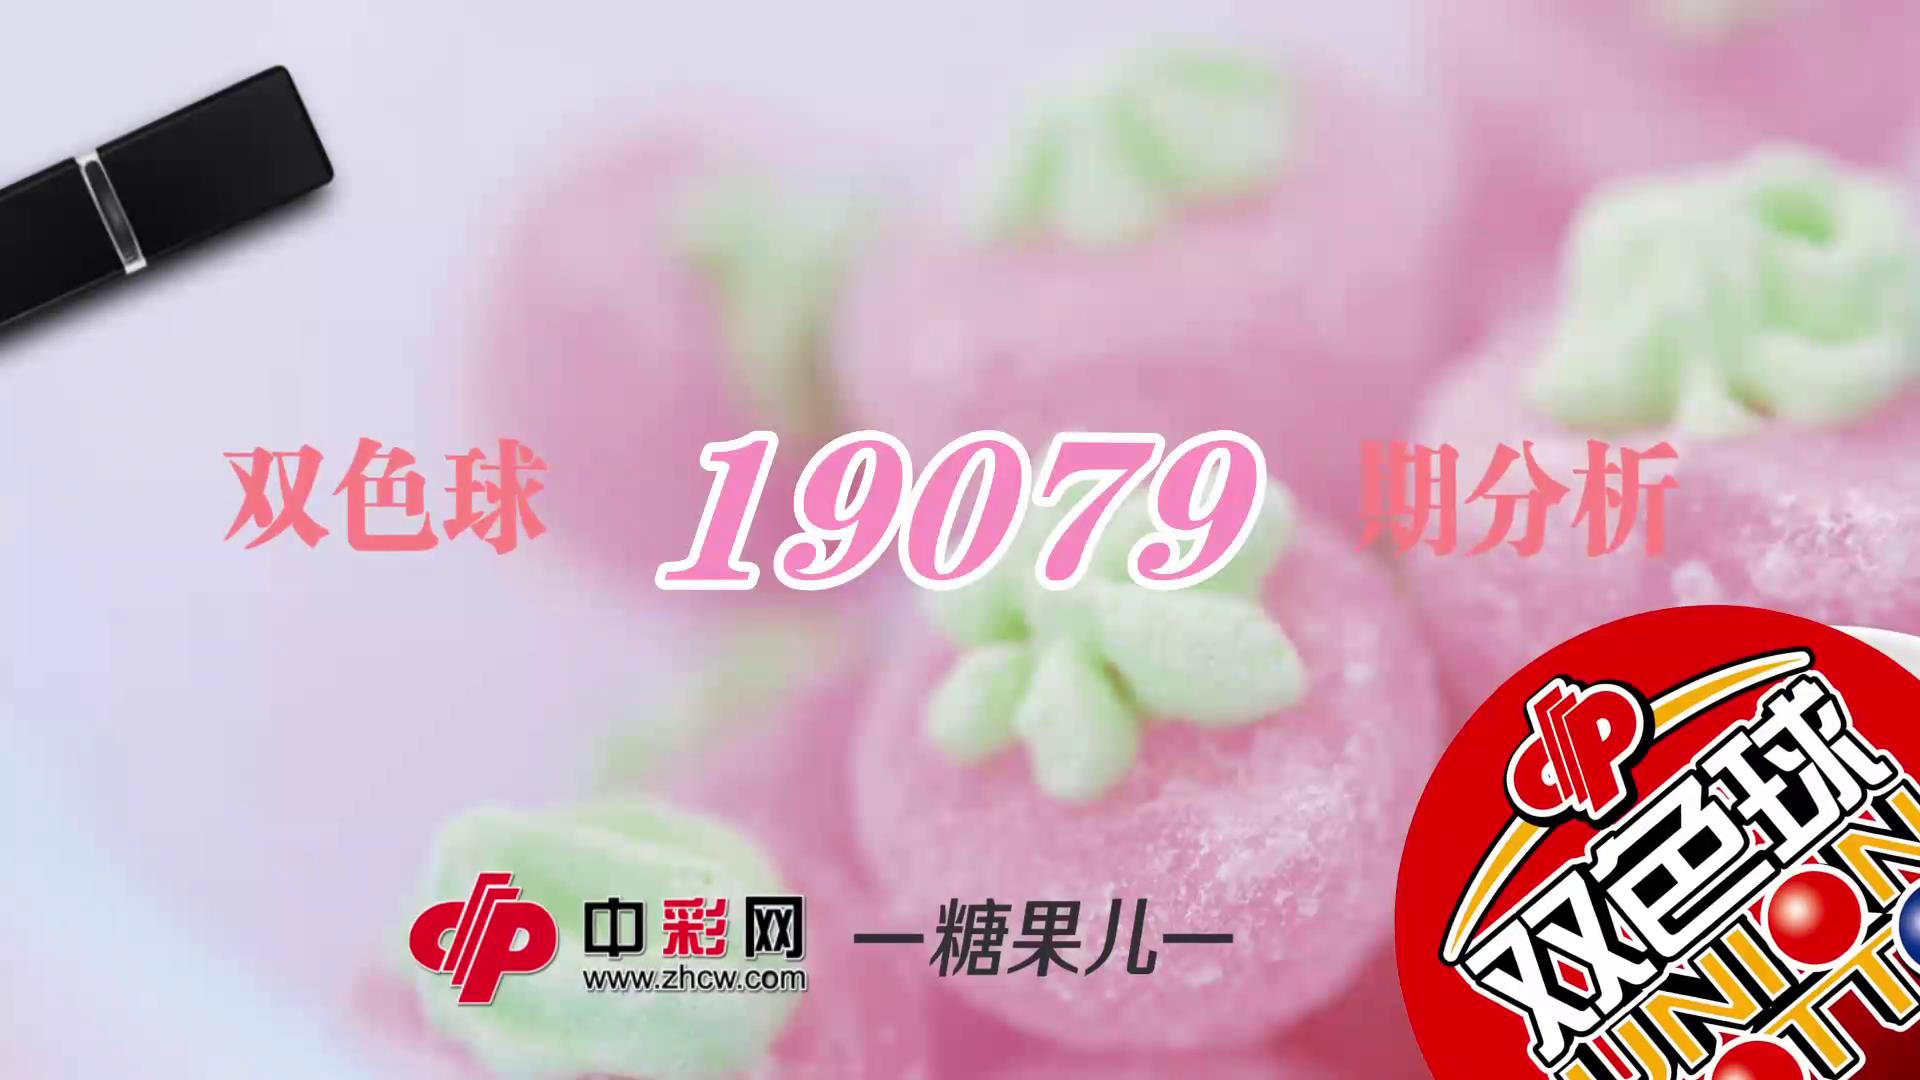 【中彩视频】糖果儿双色球第19079期